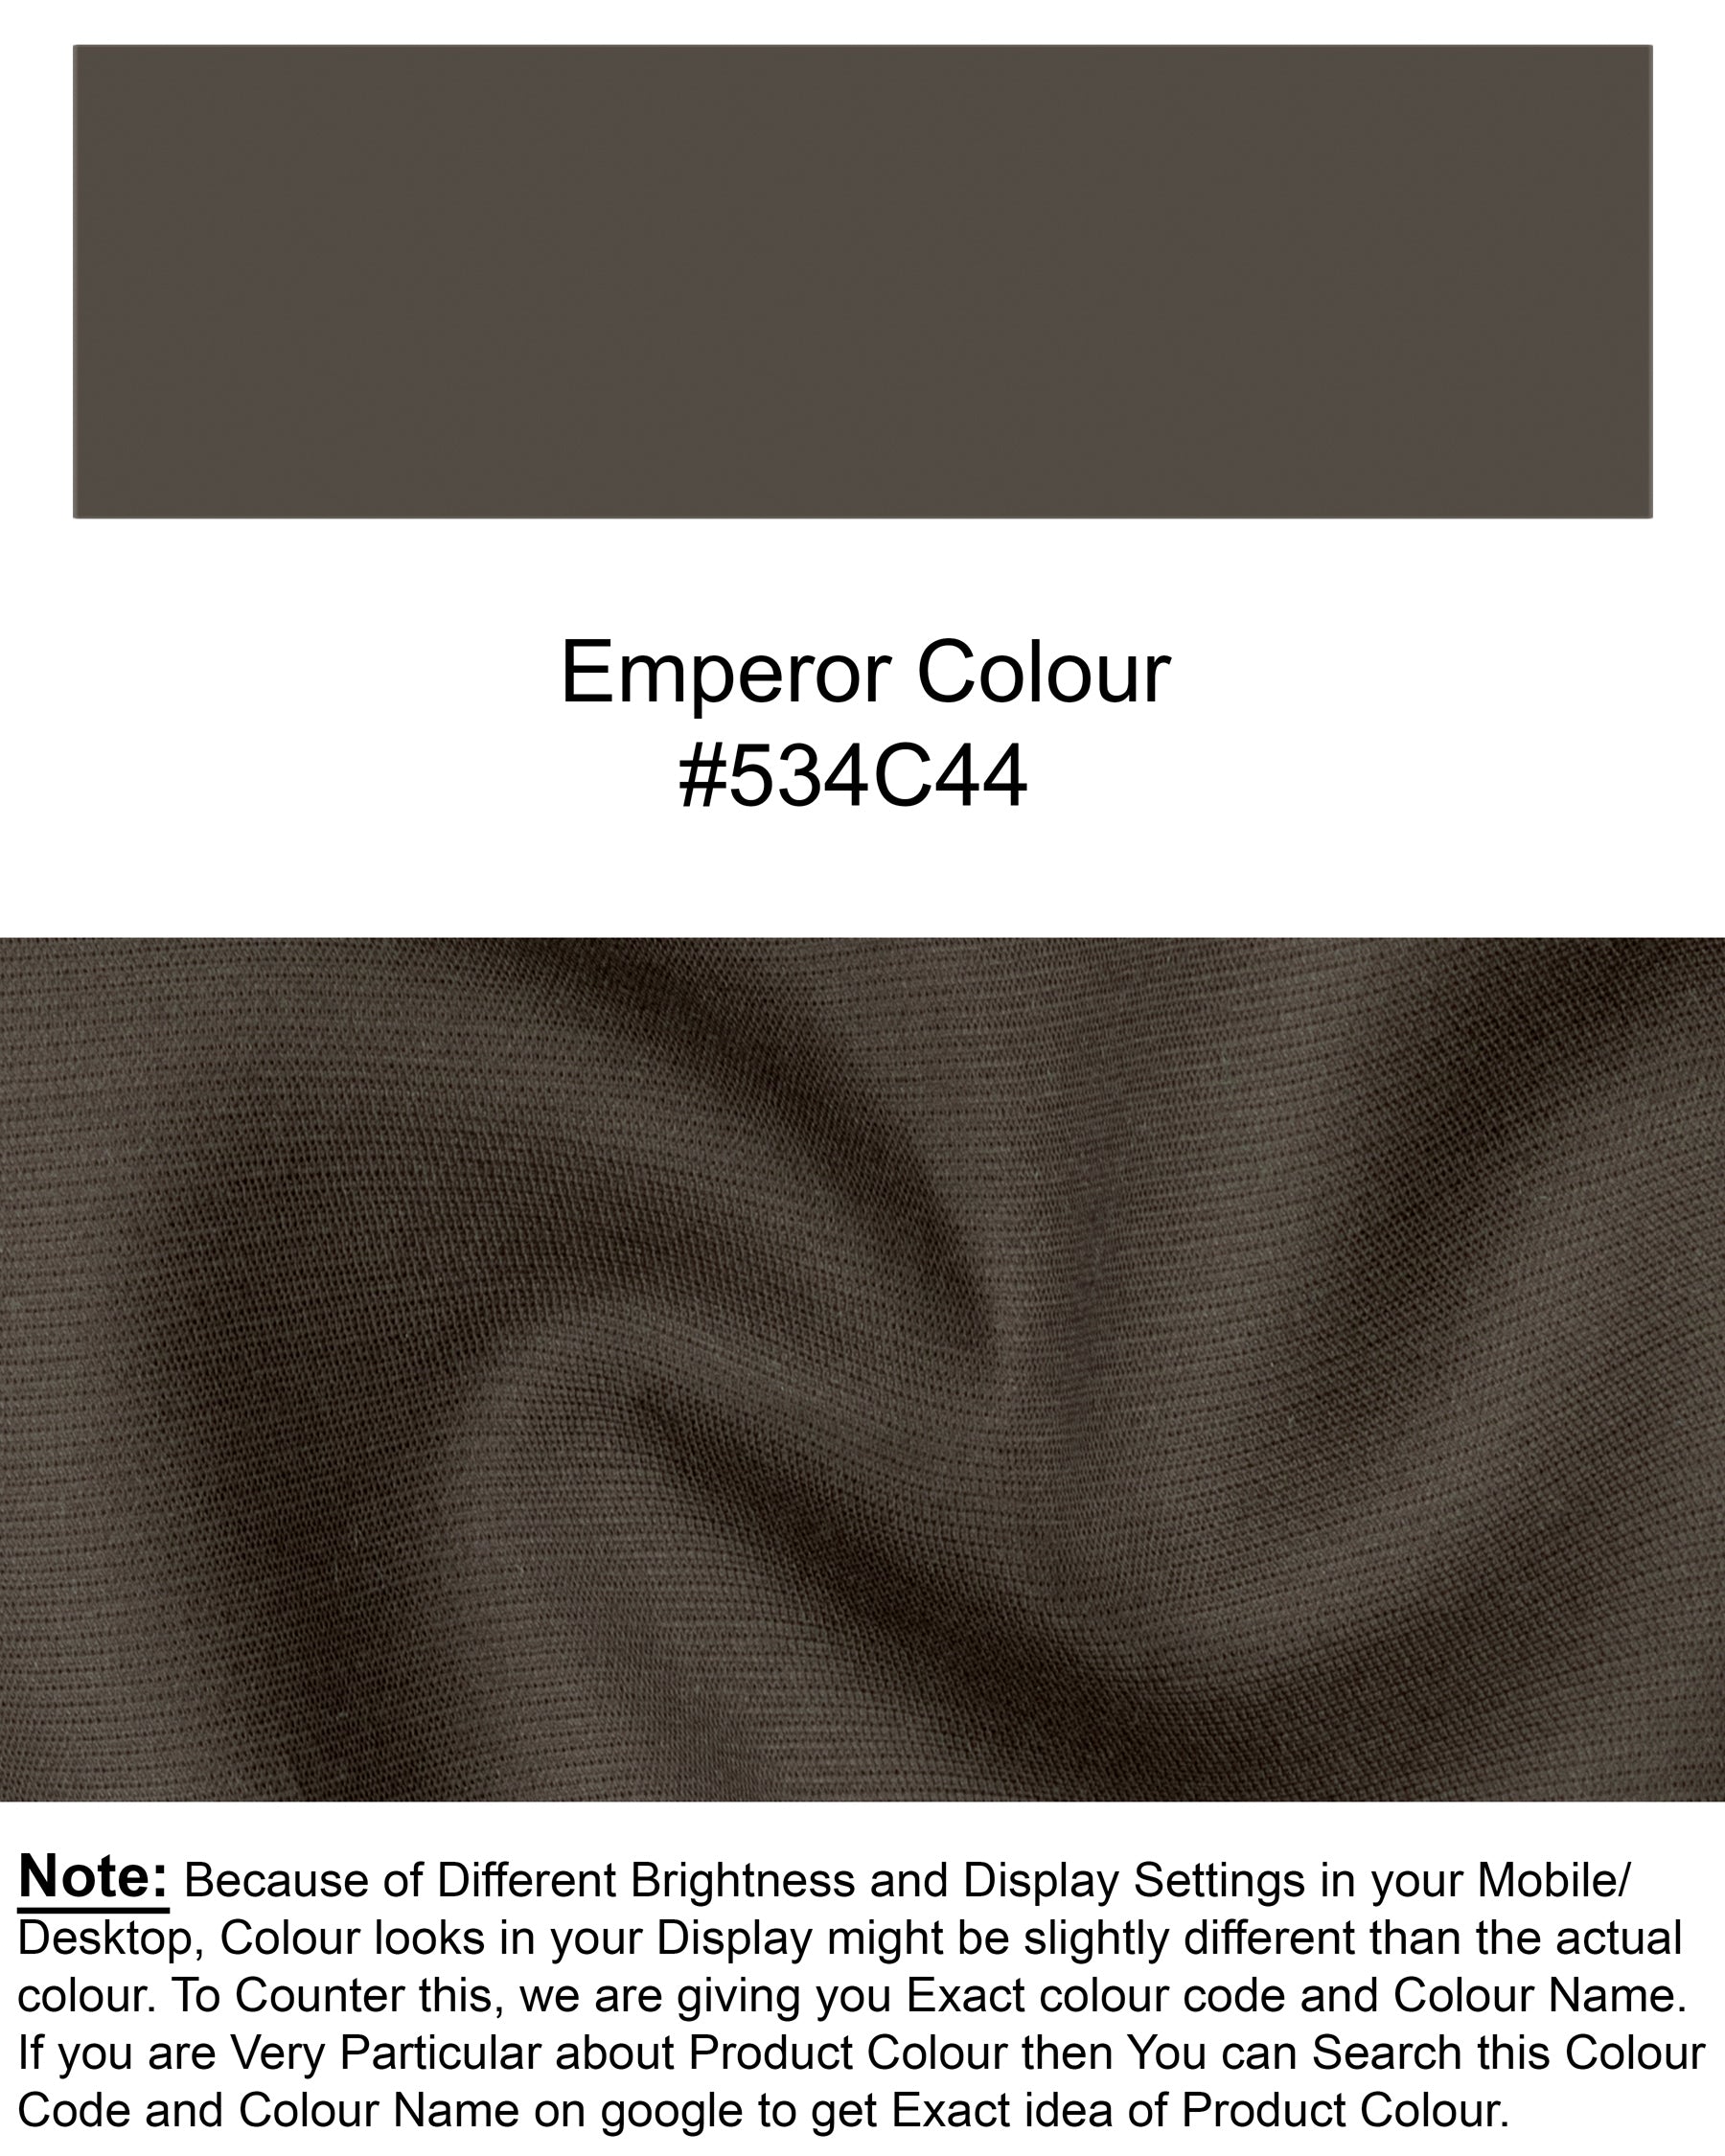 Emperor Brown Premium Cotton Blazer BL1259-SBP-36, BL1259-SBP-38, BL1259-SBP-40, BL1259-SBP-42, BL1259-SBP-52, BL1259-SBP-44, BL1259-SBP-46, BL1259-SBP-48, BL1259-SBP-50, BL1259-SBP-54, BL1259-SBP-56, BL1259-SBP-58, BL1259-SBP-60